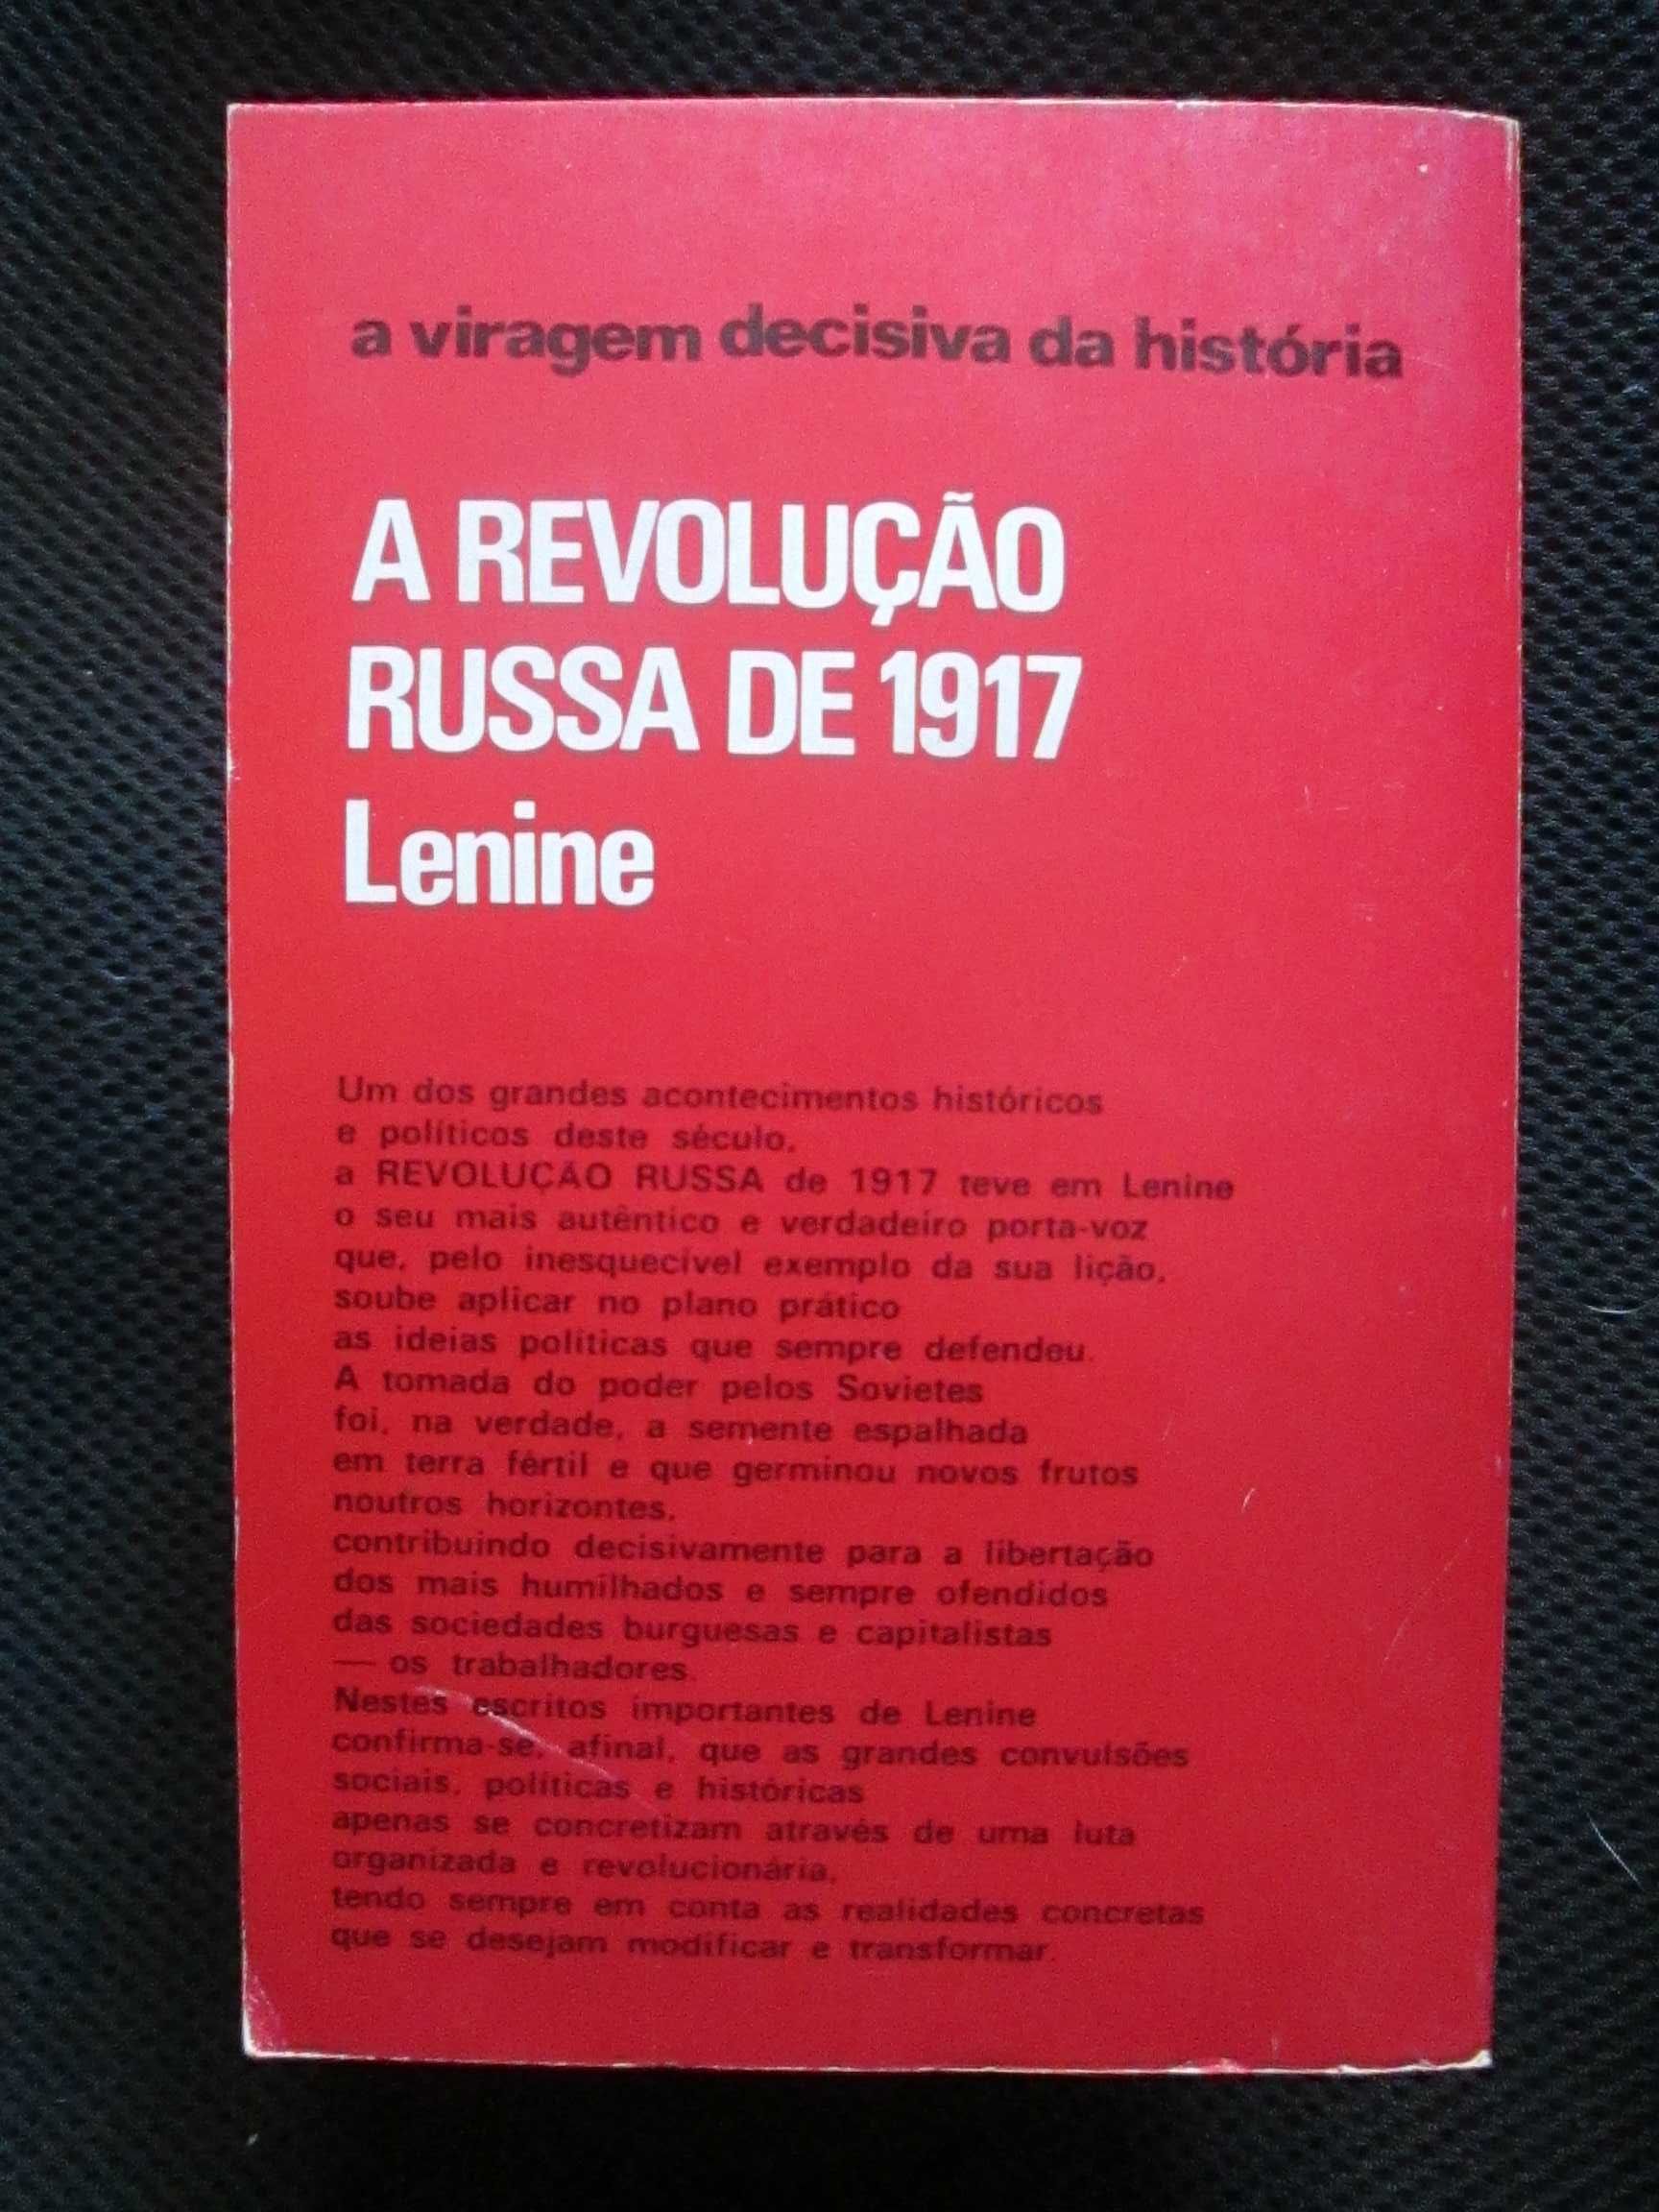 A Revolução Russa de 1917 (preparando a tomada de poder) Lenine